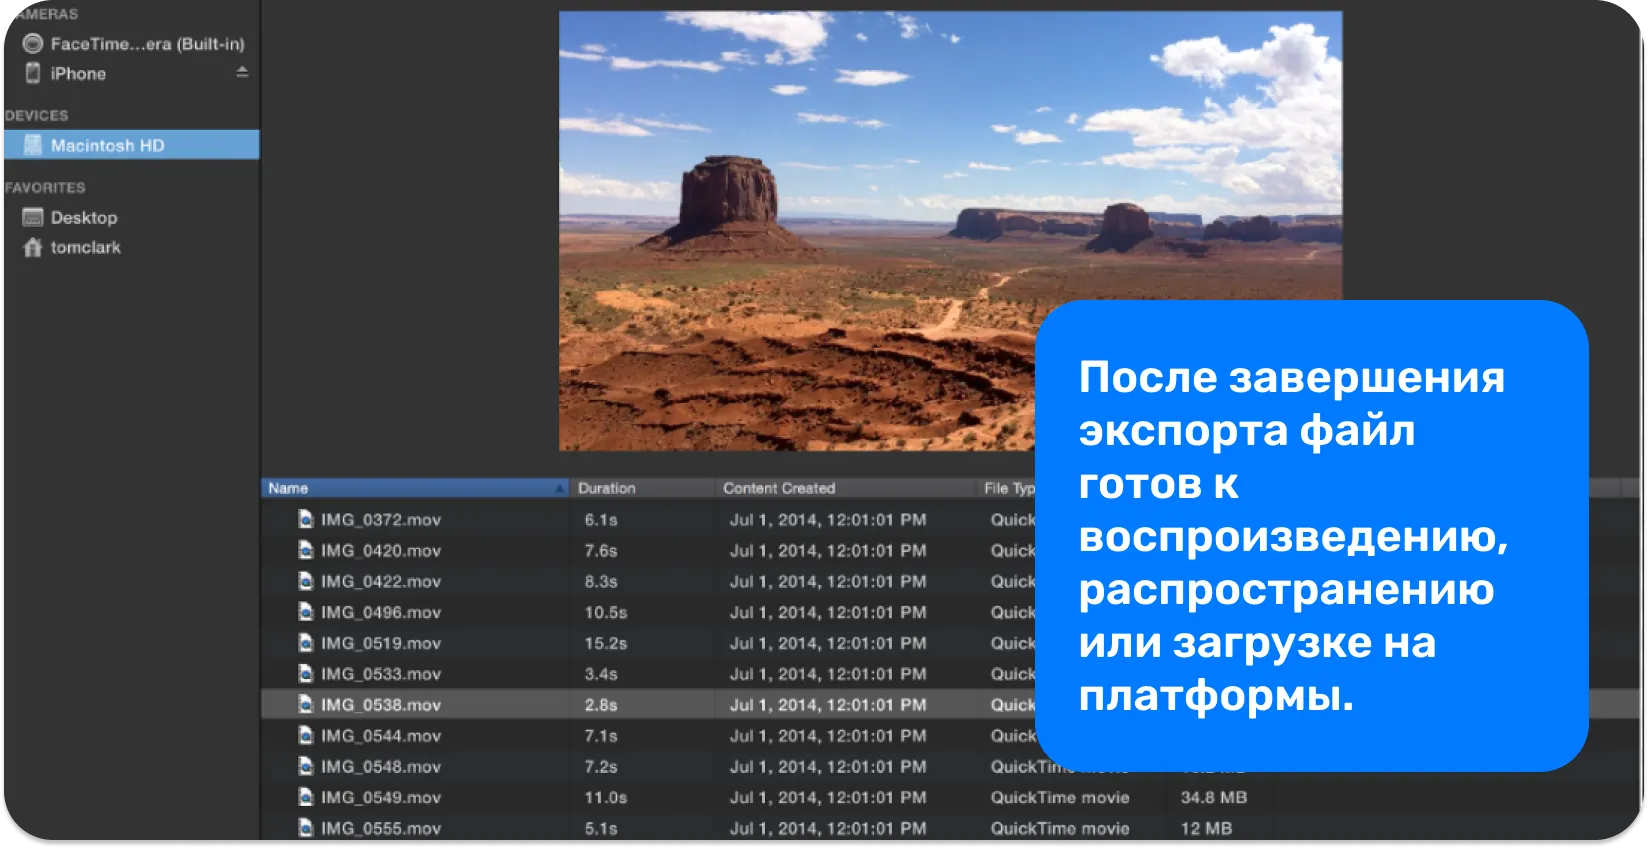 Снимок экрана медиатеки iMovie с подборкой файлов .mov, демонстрирующих видео различной длины для редактирования проекта.